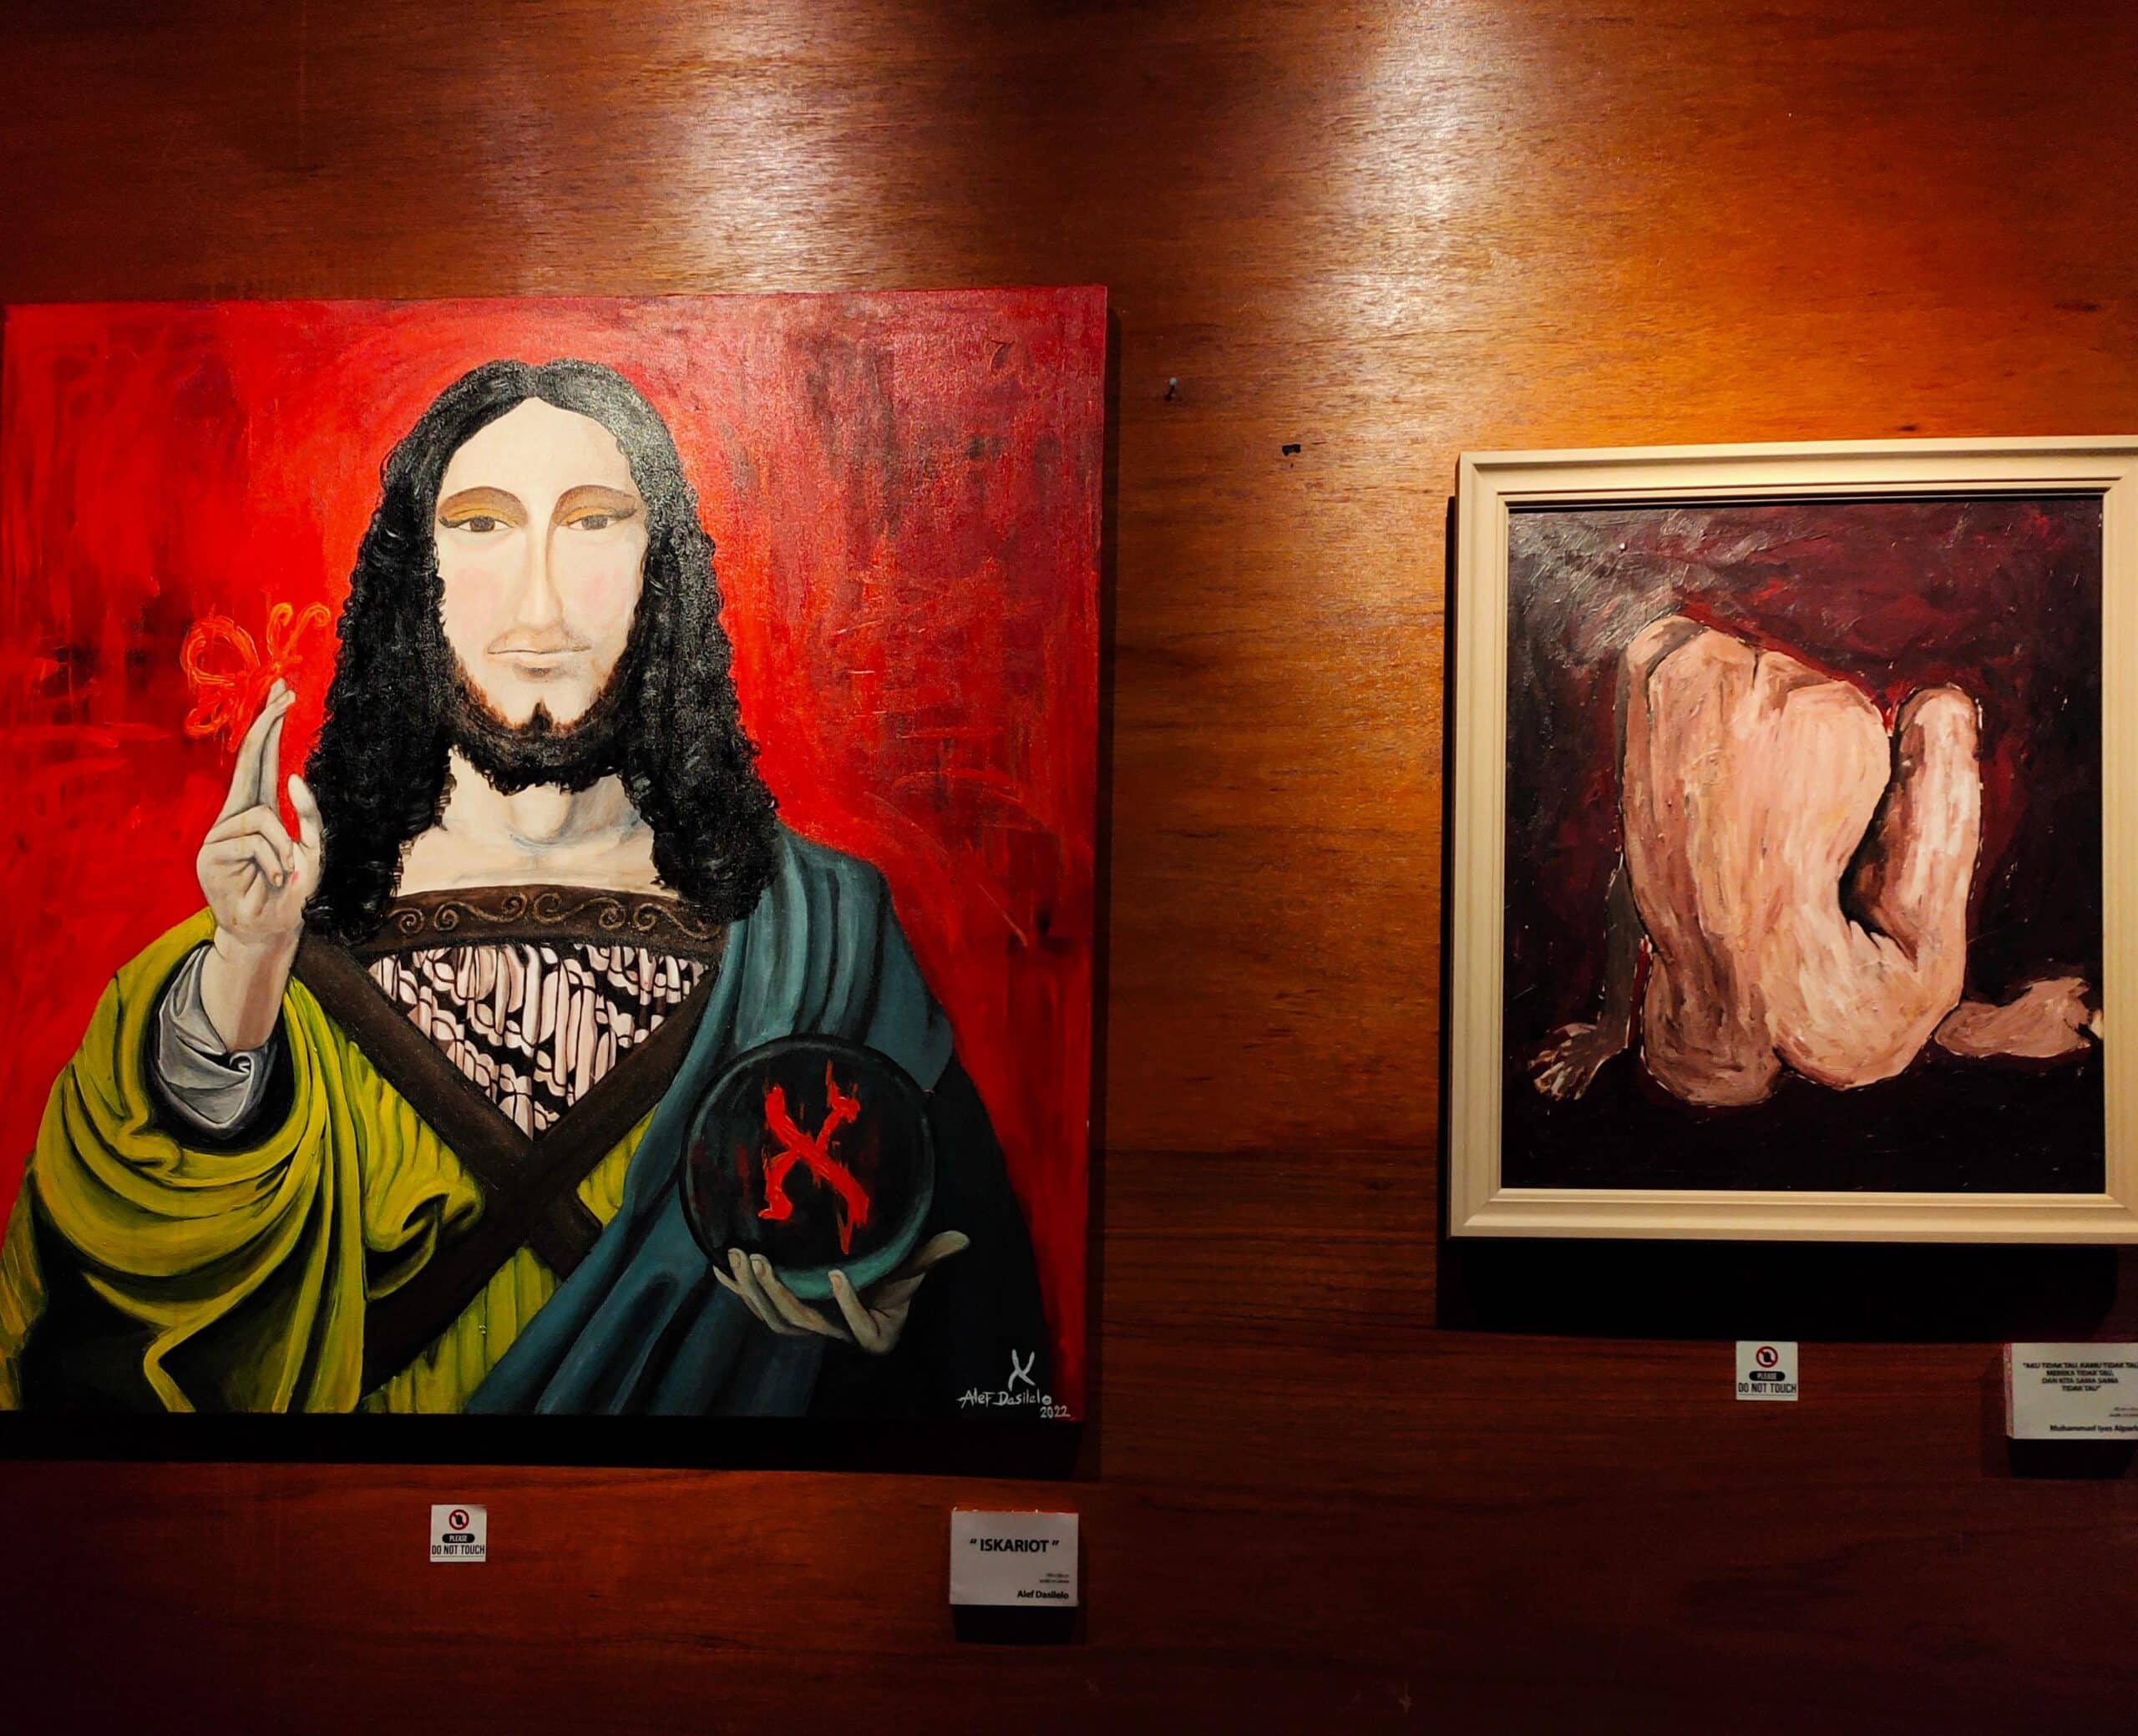 Beberapa karya seni dalam pameran “Self Revolution”. (Foto: Istimewa)